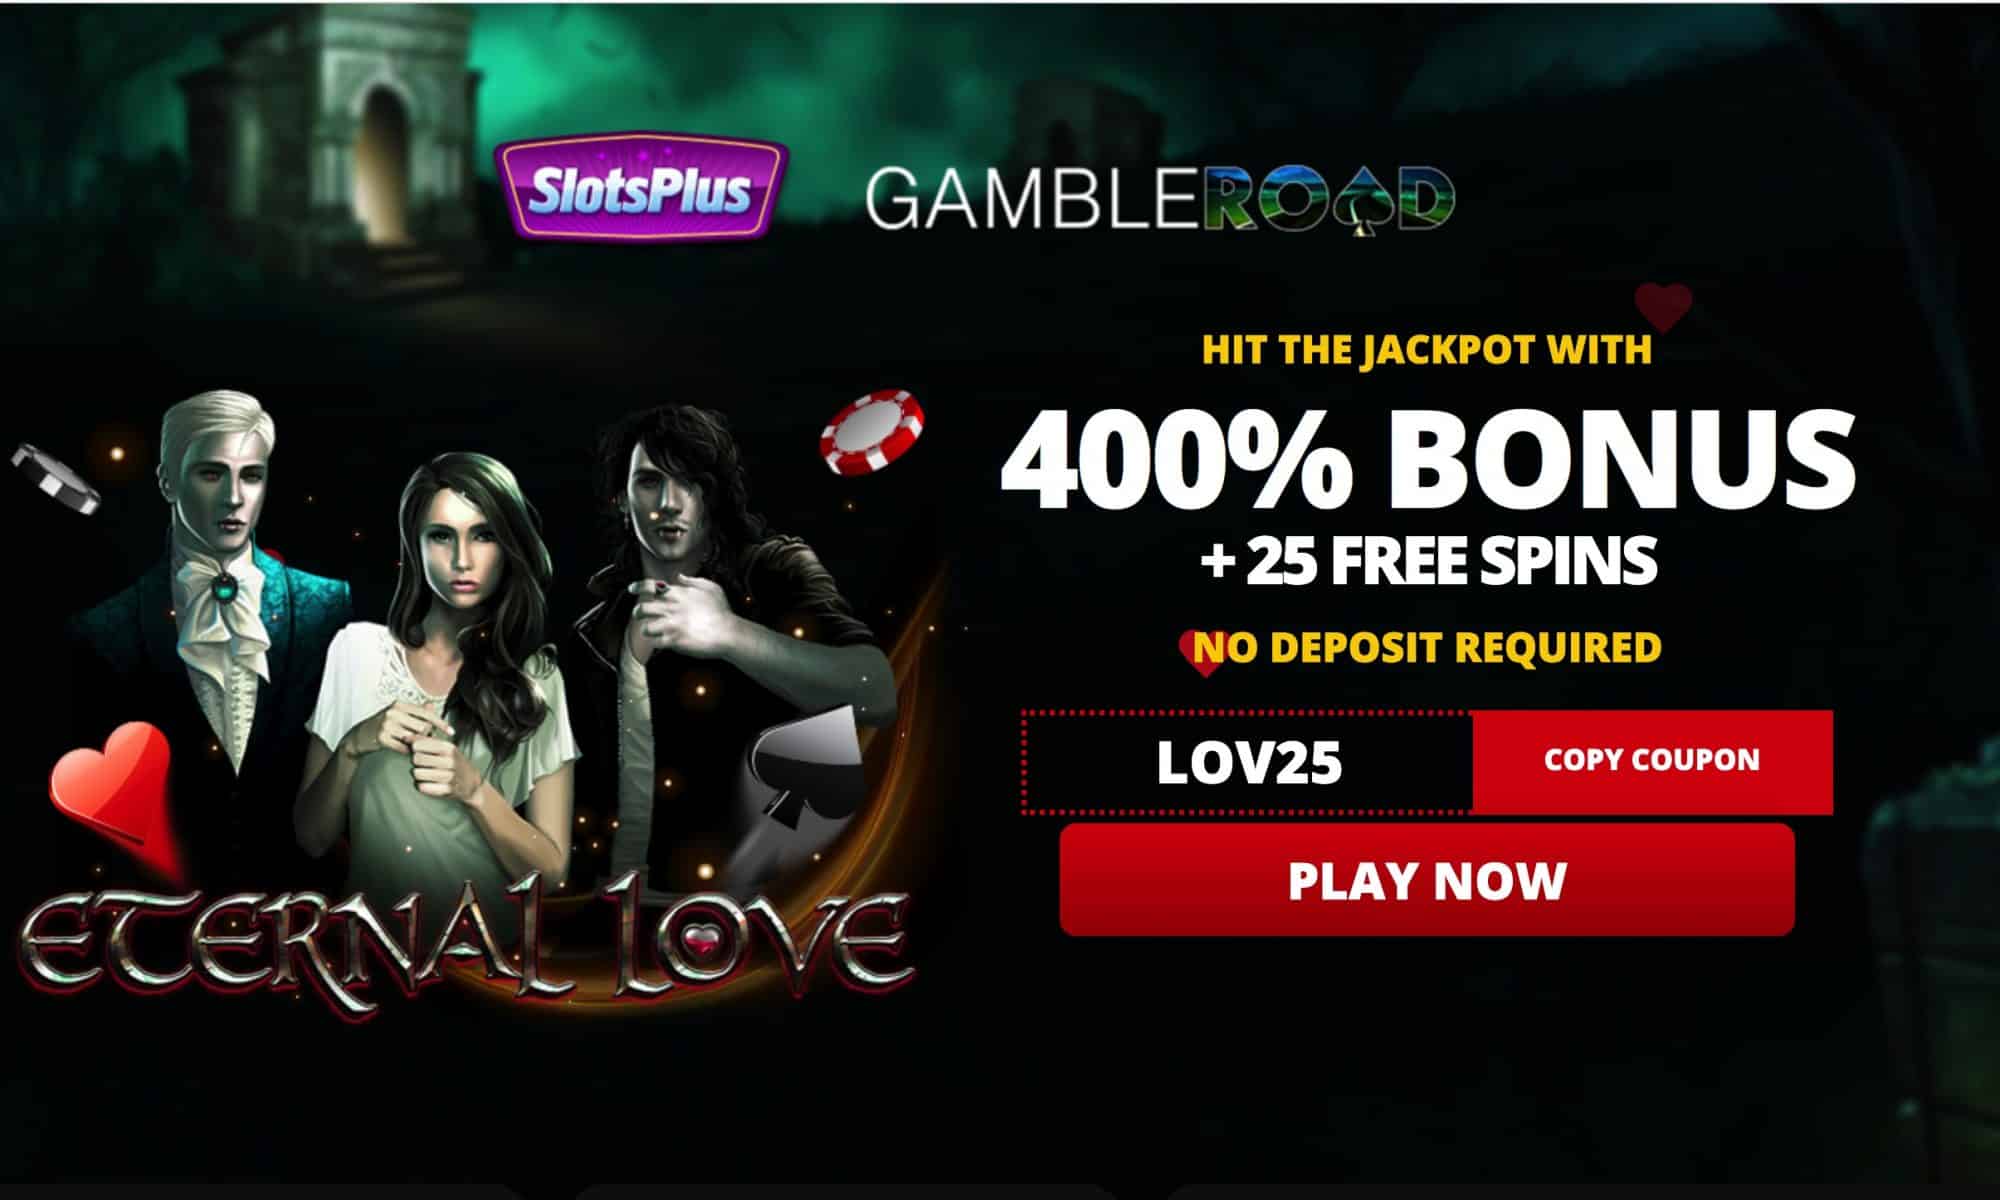 Slots Plus Casino - 25 free spins + 400% bonus